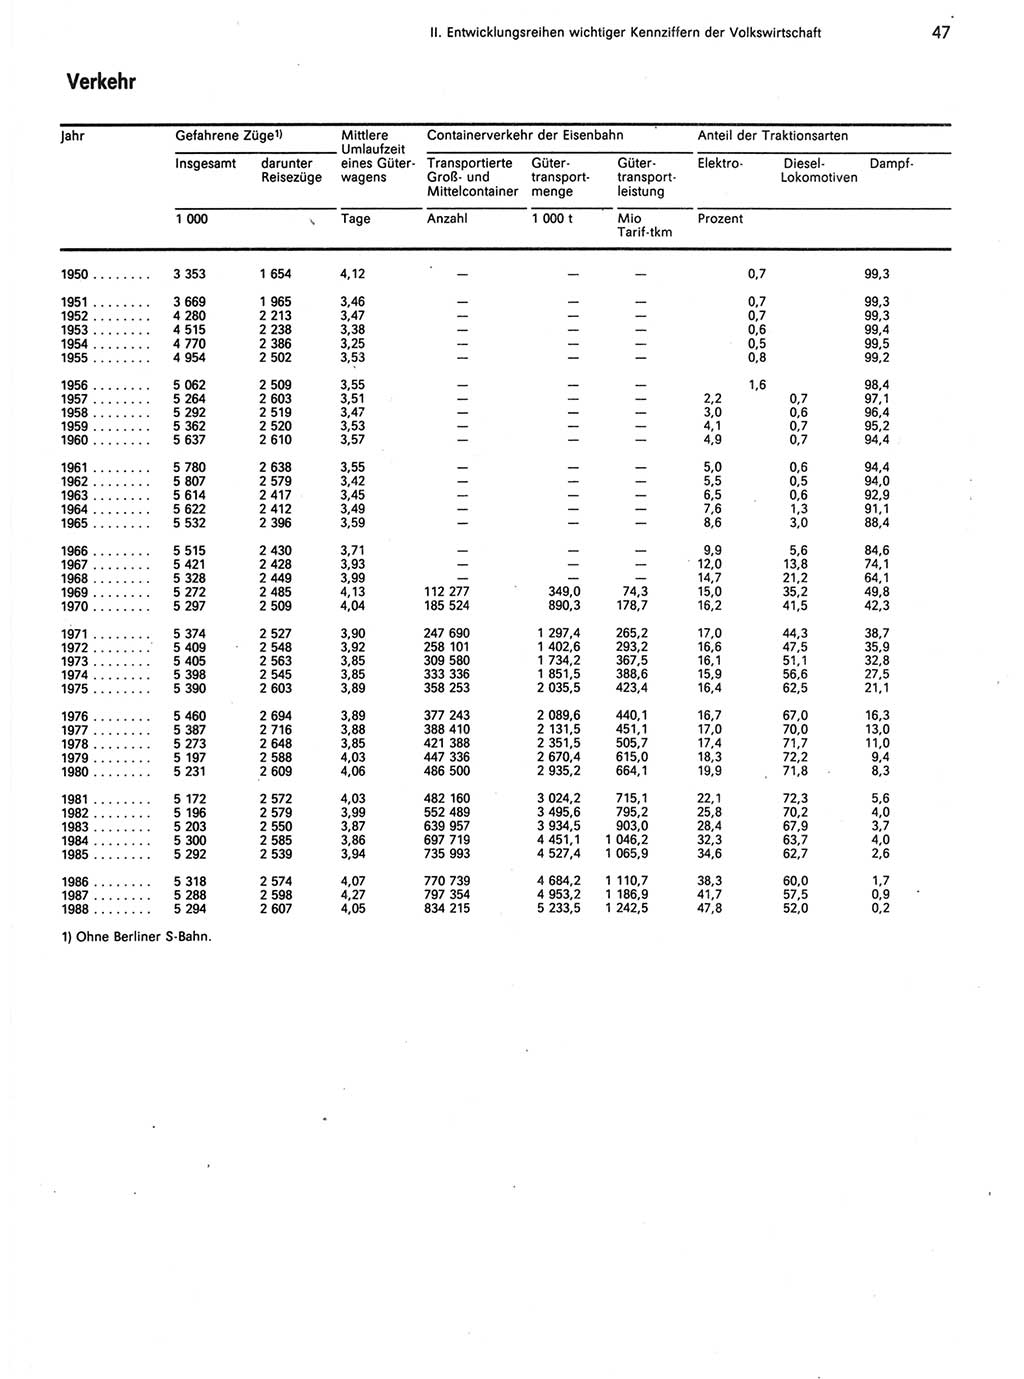 Statistisches Jahrbuch der Deutschen Demokratischen Republik (DDR) 1989, Seite 47 (Stat. Jb. DDR 1989, S. 47)